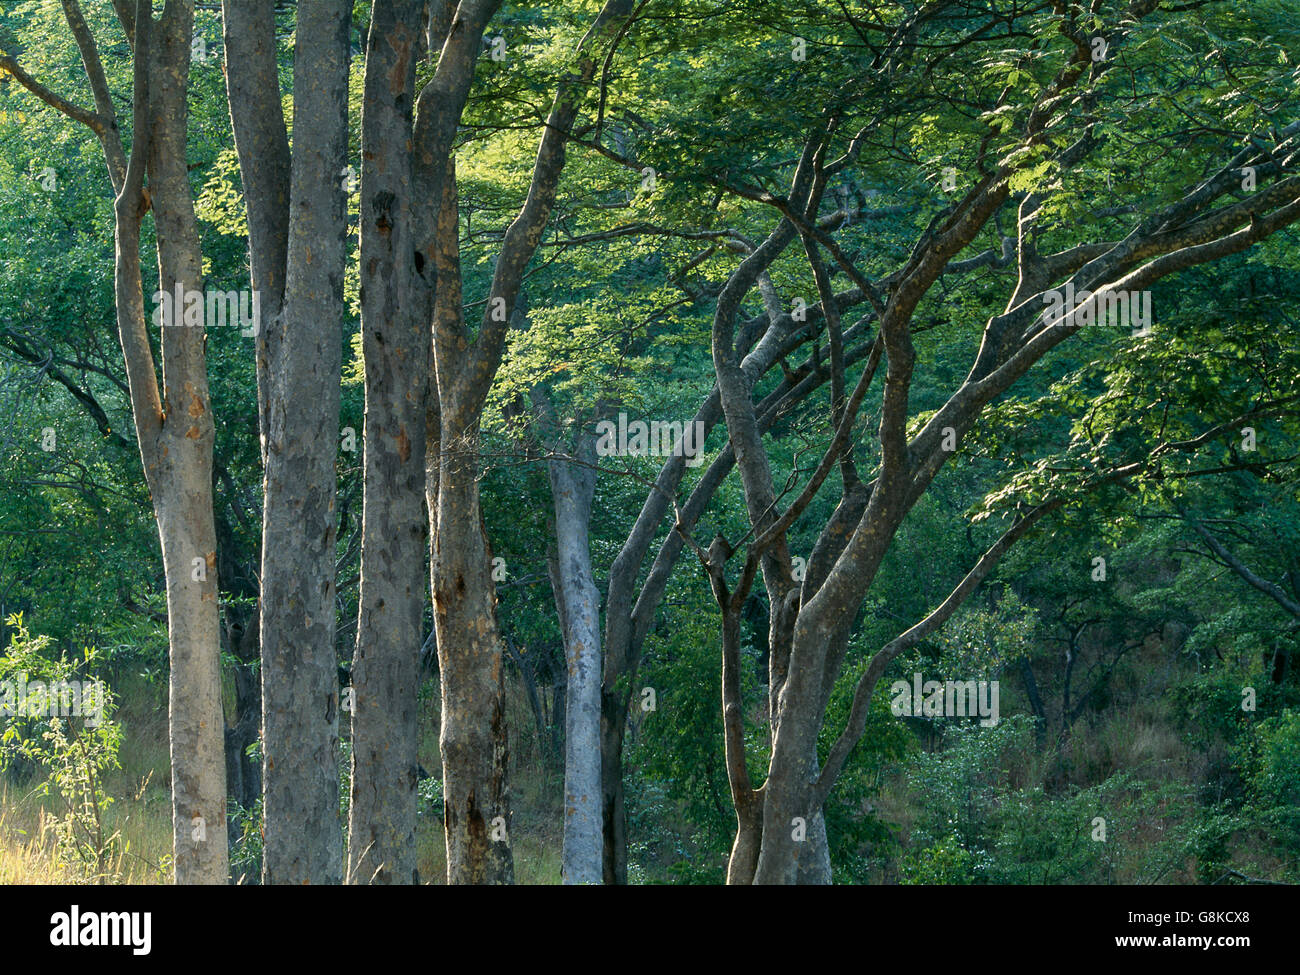 Trees in a Chizarira Park forest, Zambezi Escarpment, Zimbabwe. Stock Photo